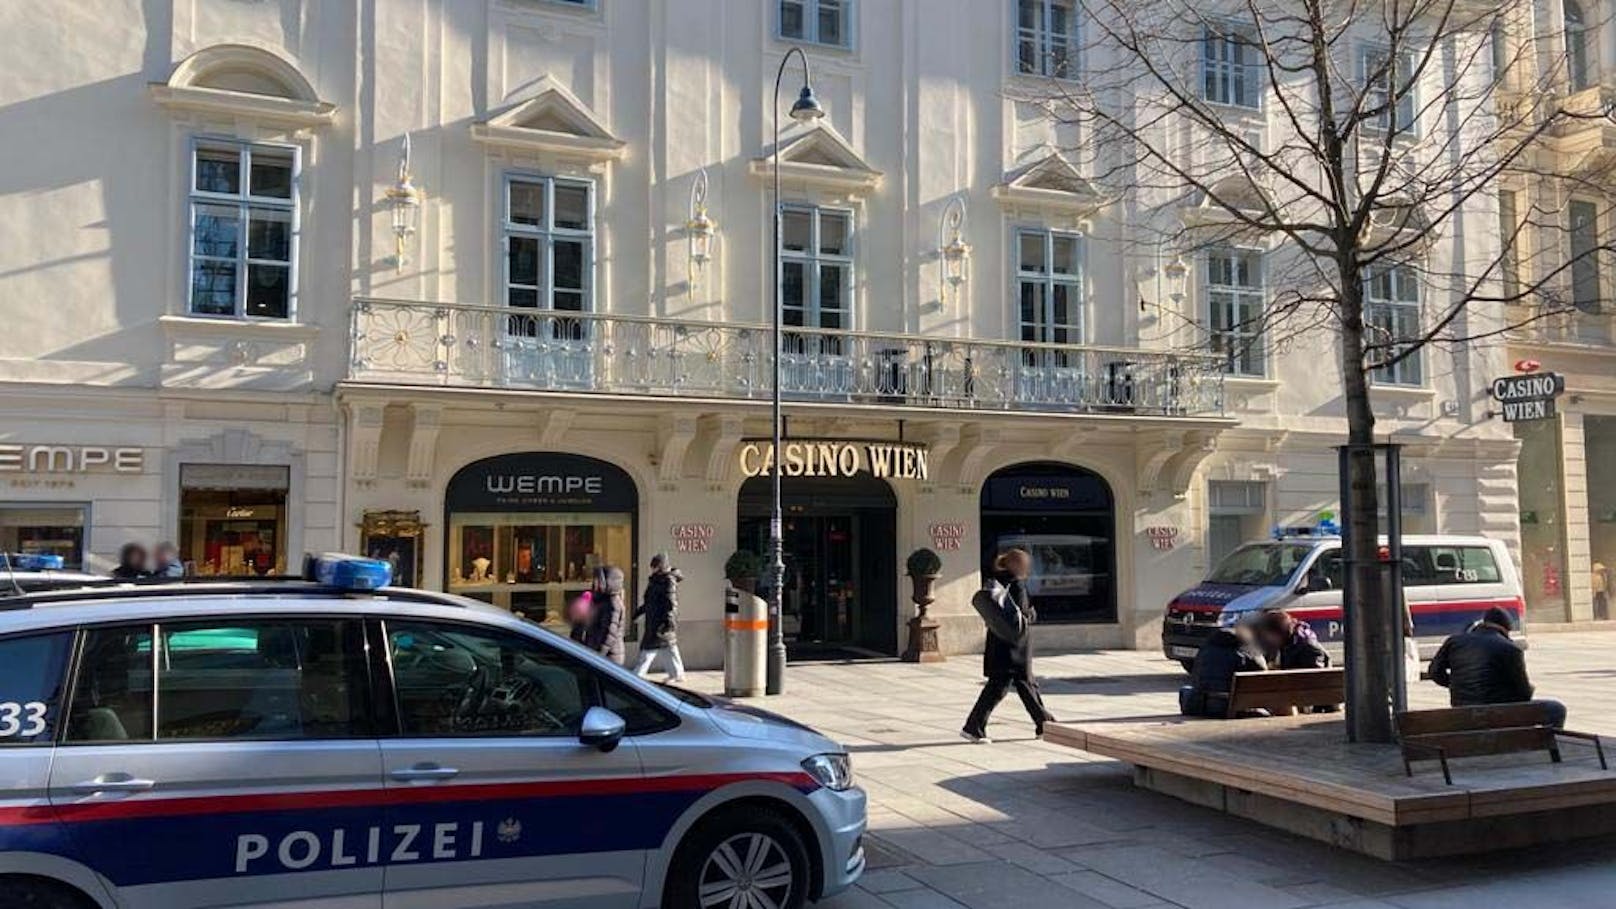 Raubüberfall auf Casino in Wien – Täter auf der Flucht